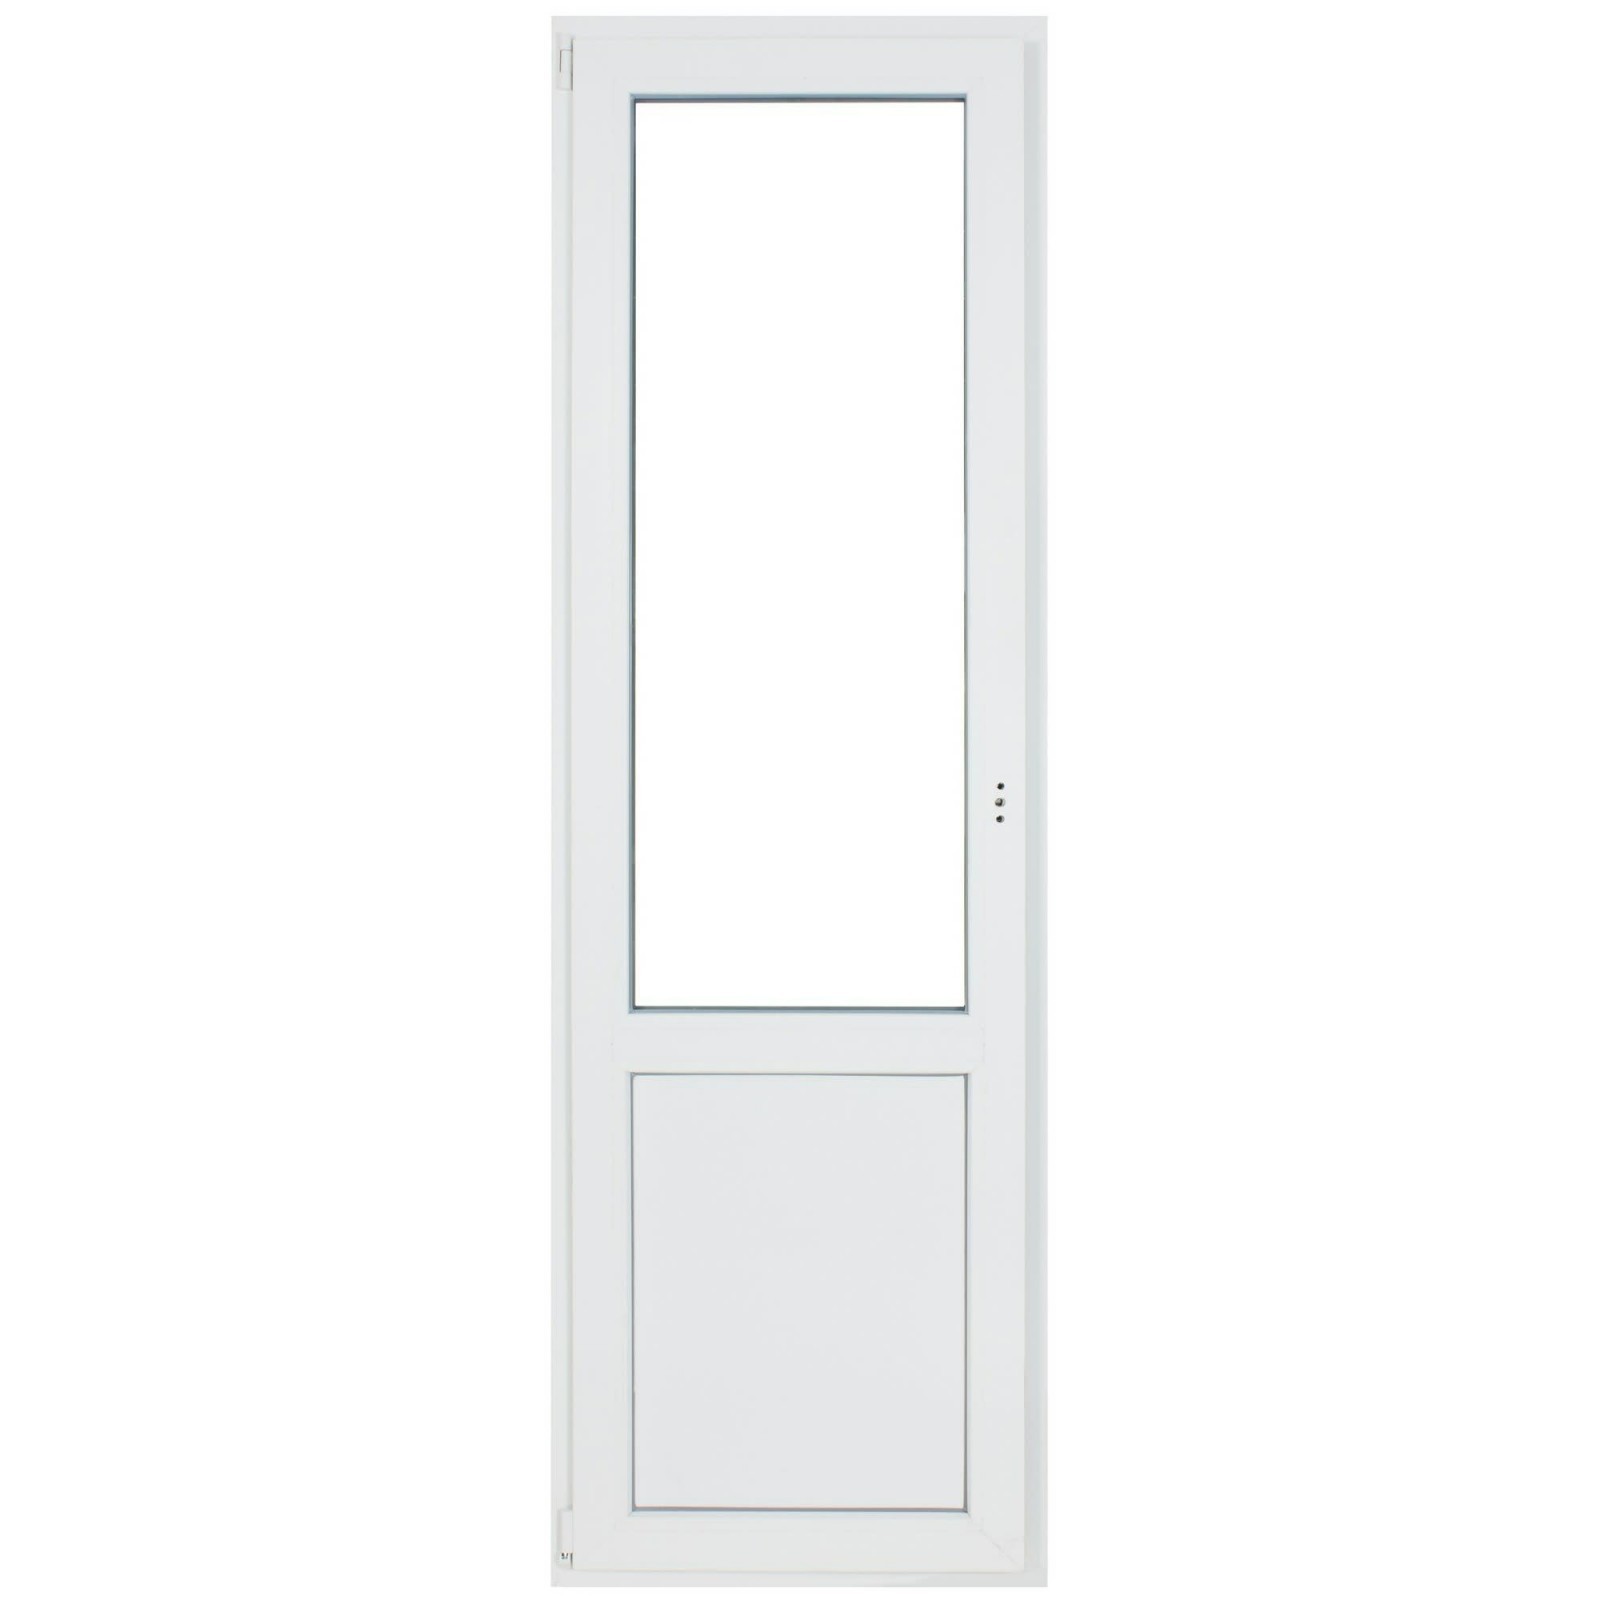 Дверь балконная ПВХ, 1-кам. левая 2100*750 мм - фото - 1